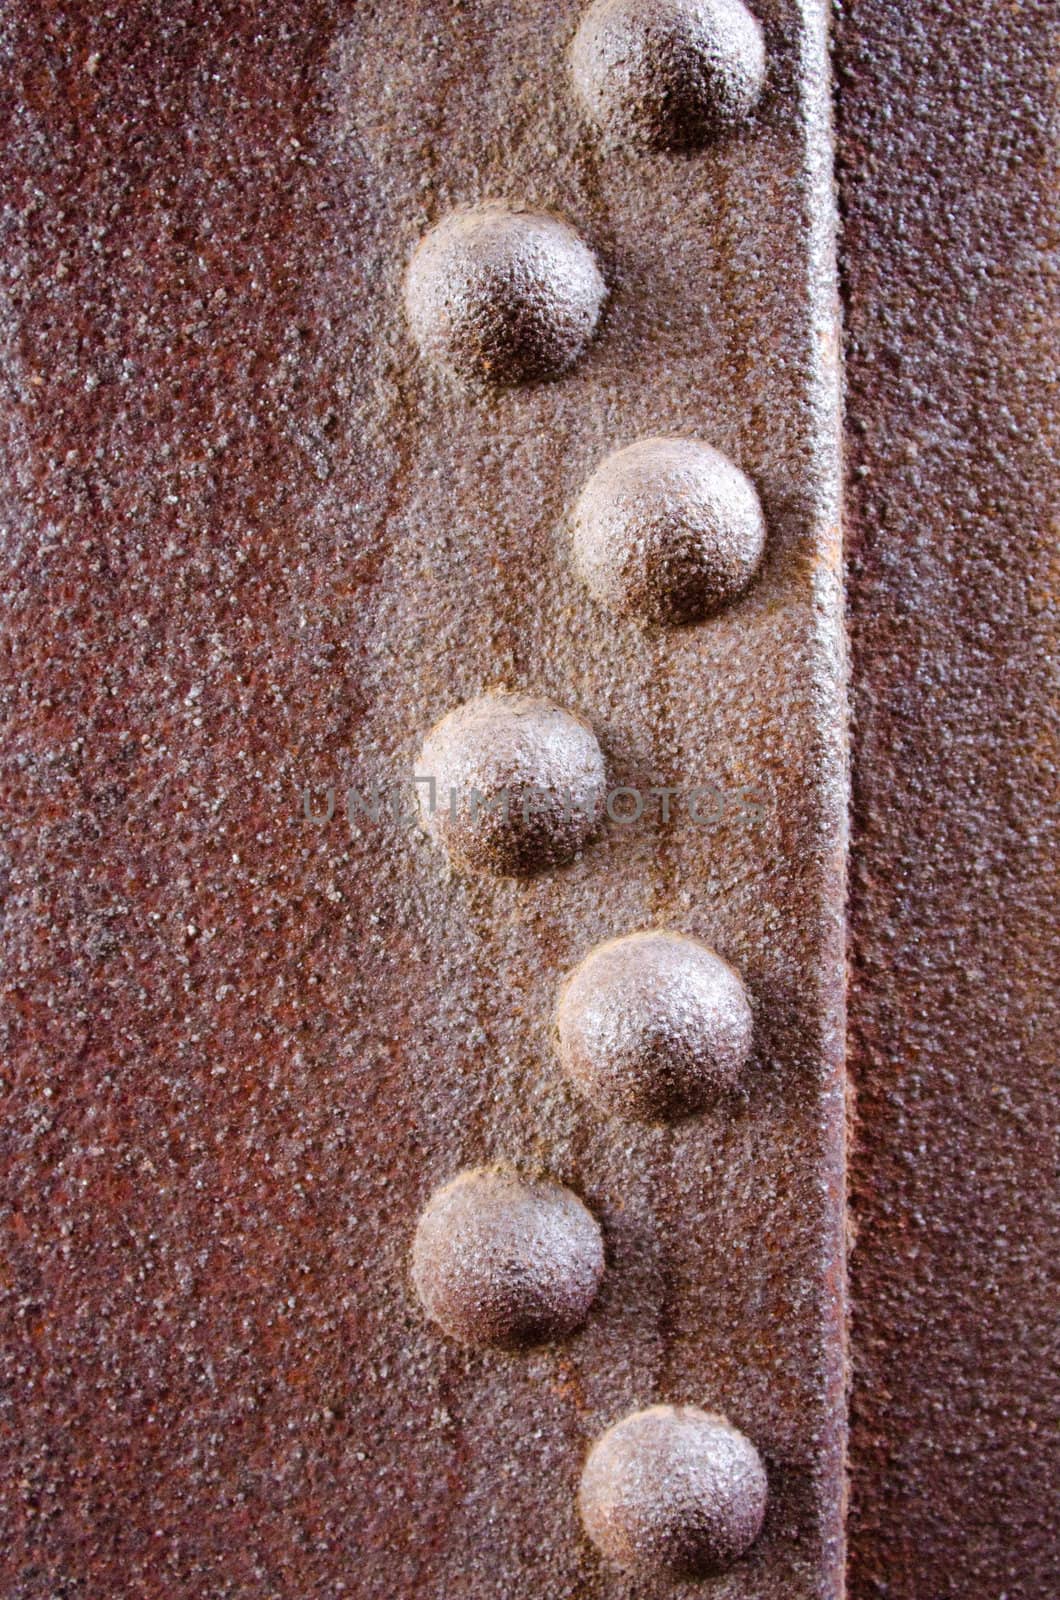 rivets on a rusty metal sheet by njaj